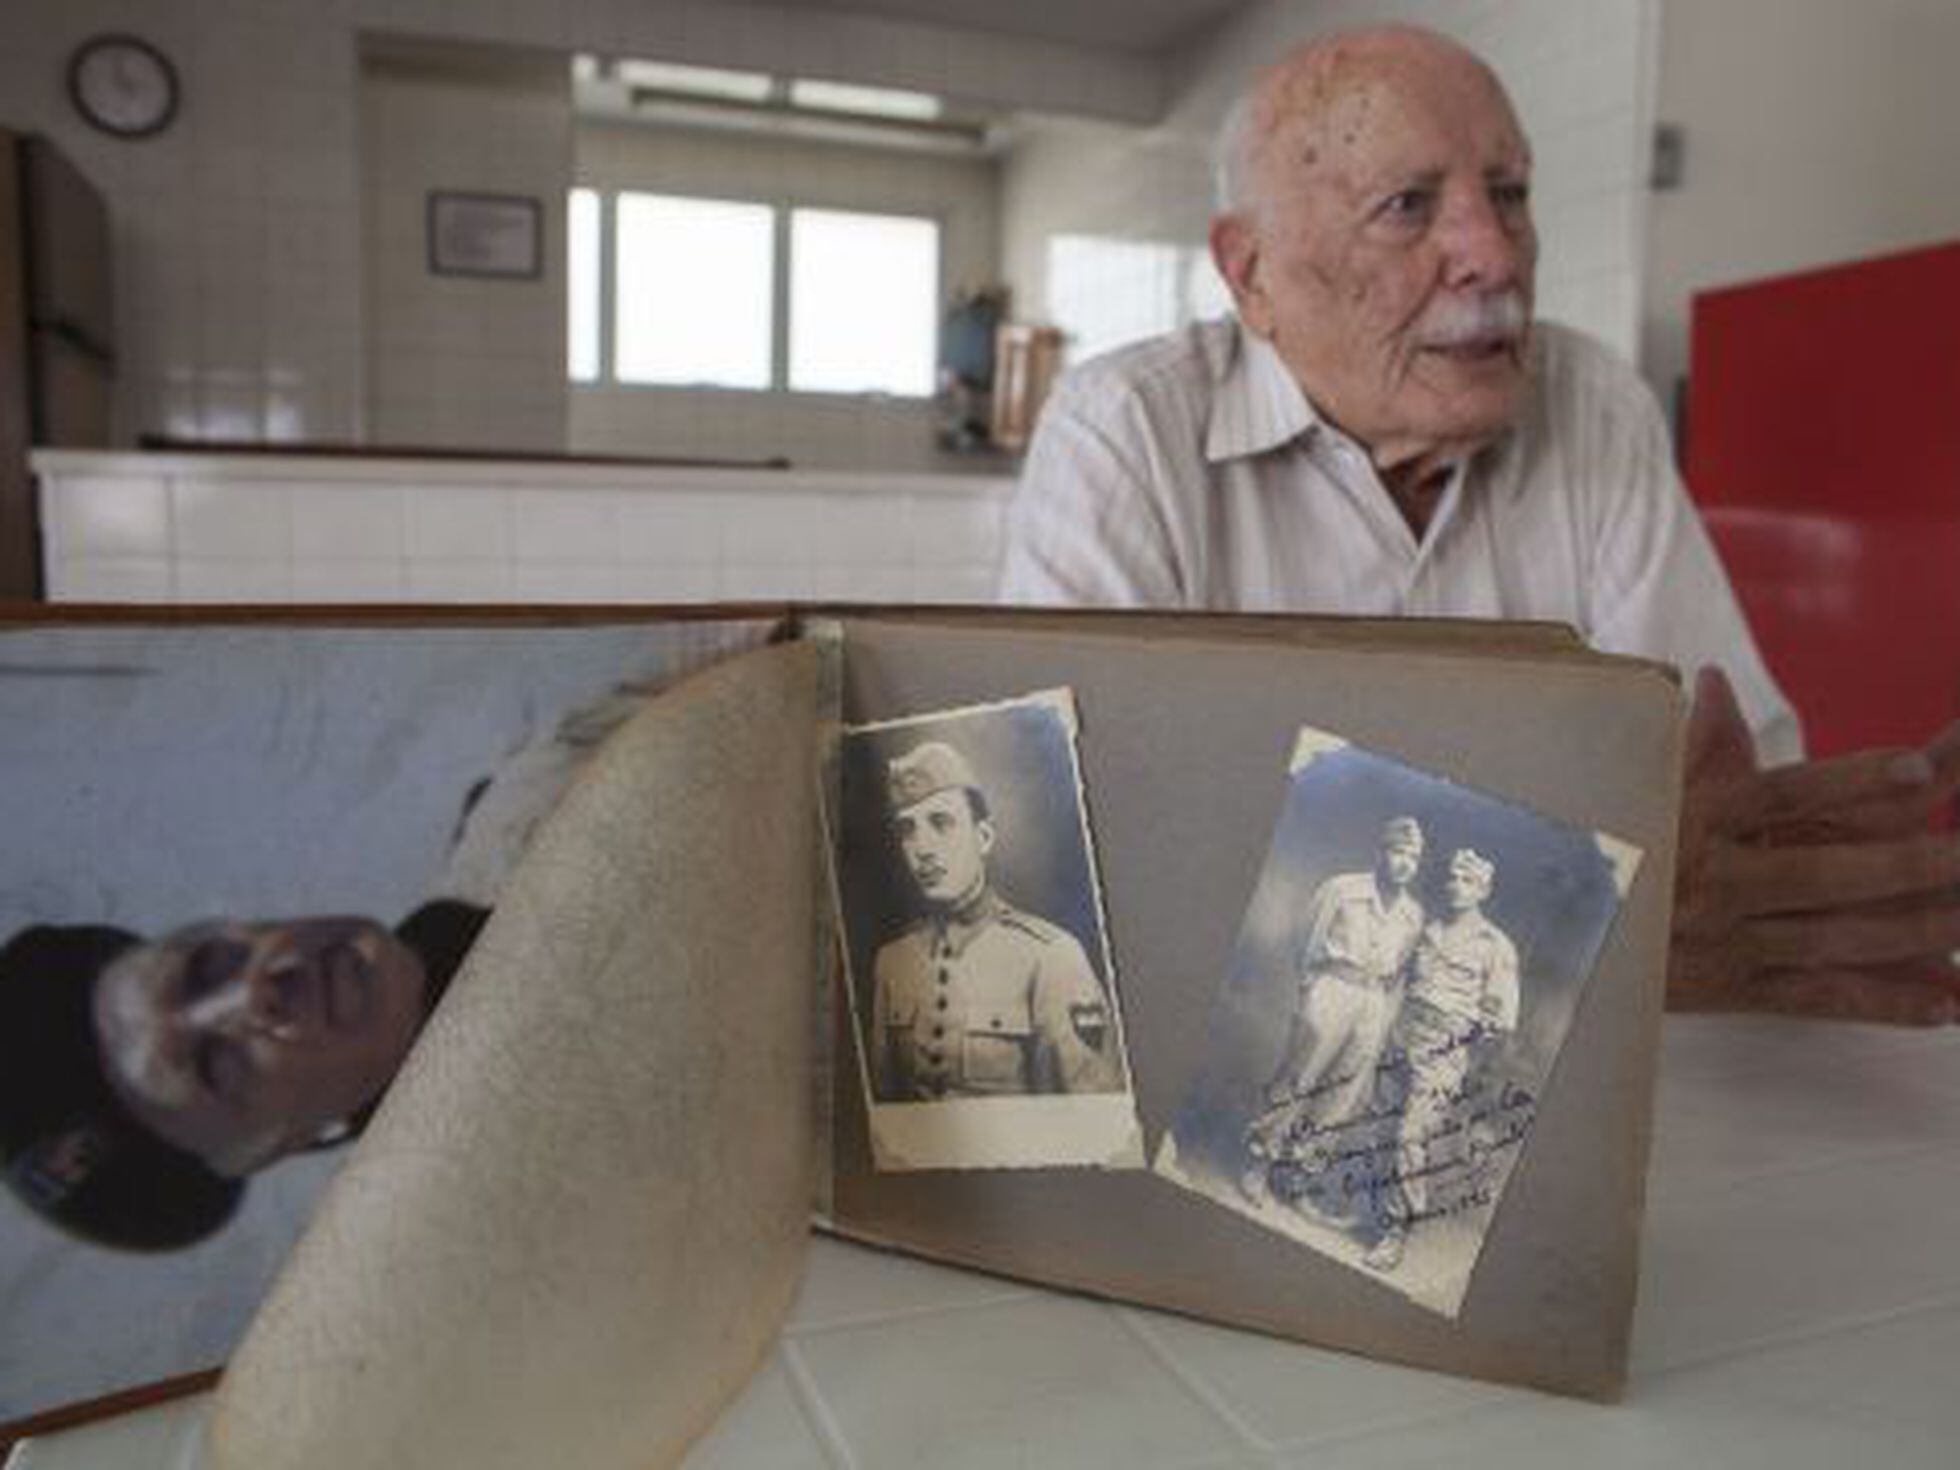 Jogo conta história da Força Expedicionária Brasileira na 2ª Guerra Mundial